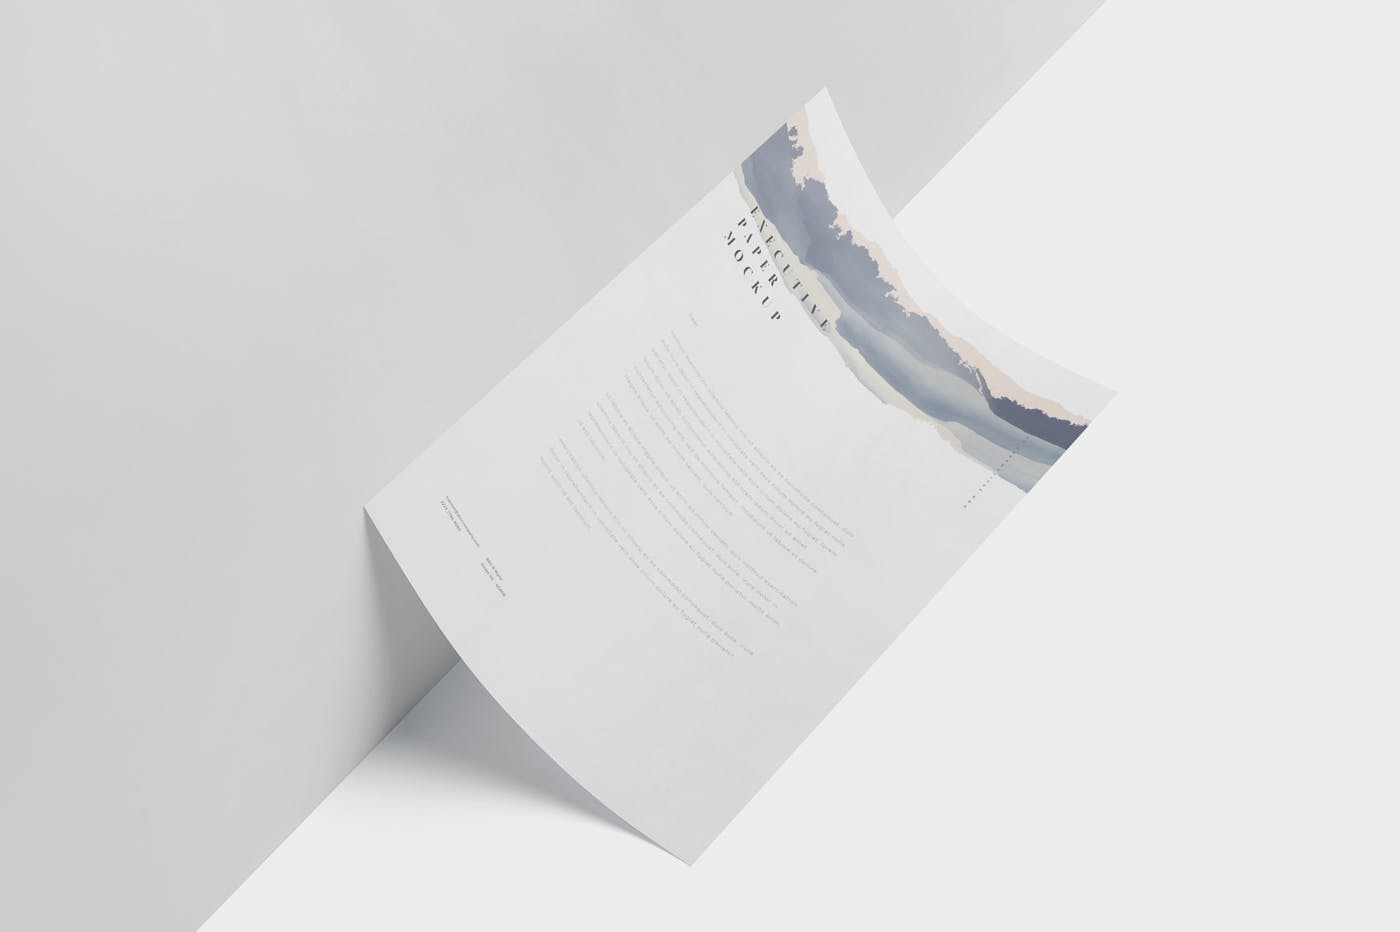 企业宣传单张设计效果图样机第一素材精选 Executive Paper Mockup – 7×10 Inch Size插图(3)